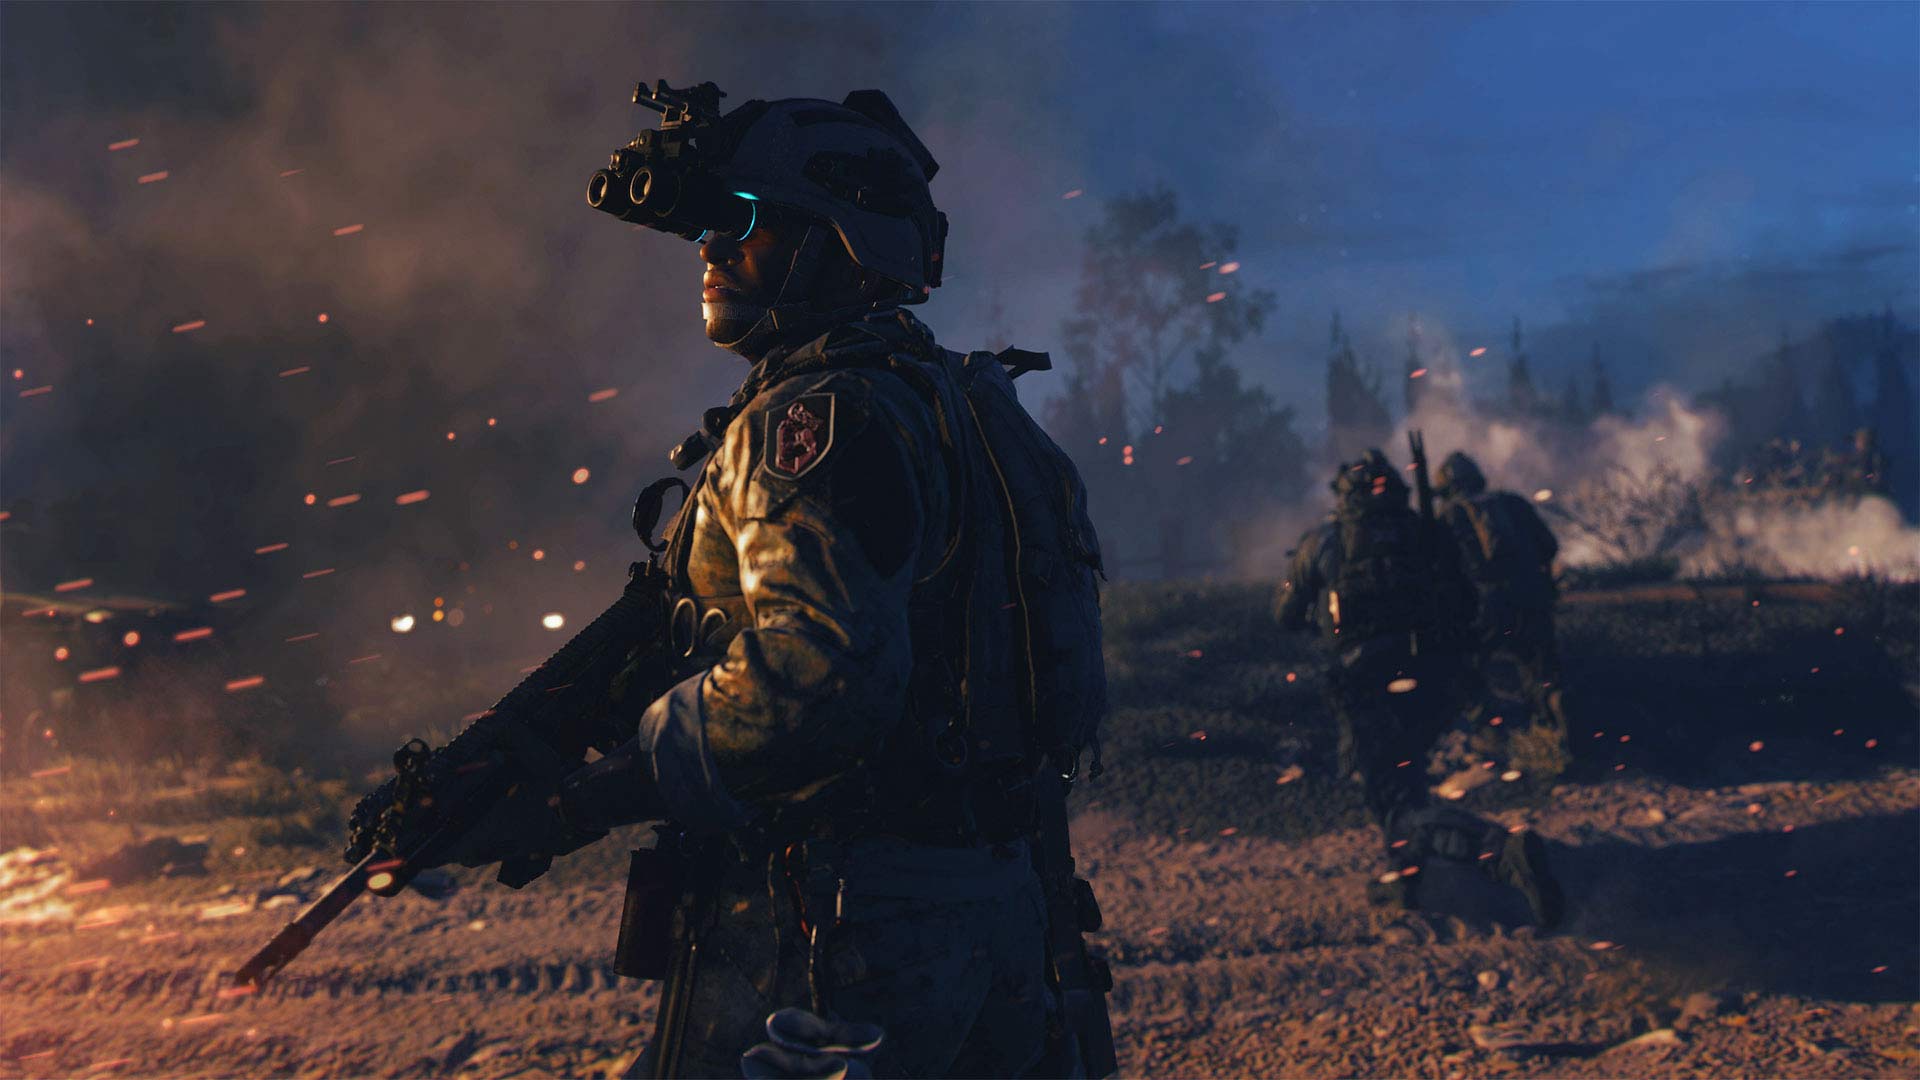 قرارداد 10 ساله مایکروسافت و نینتندو برای عرضه سری Call of Duty